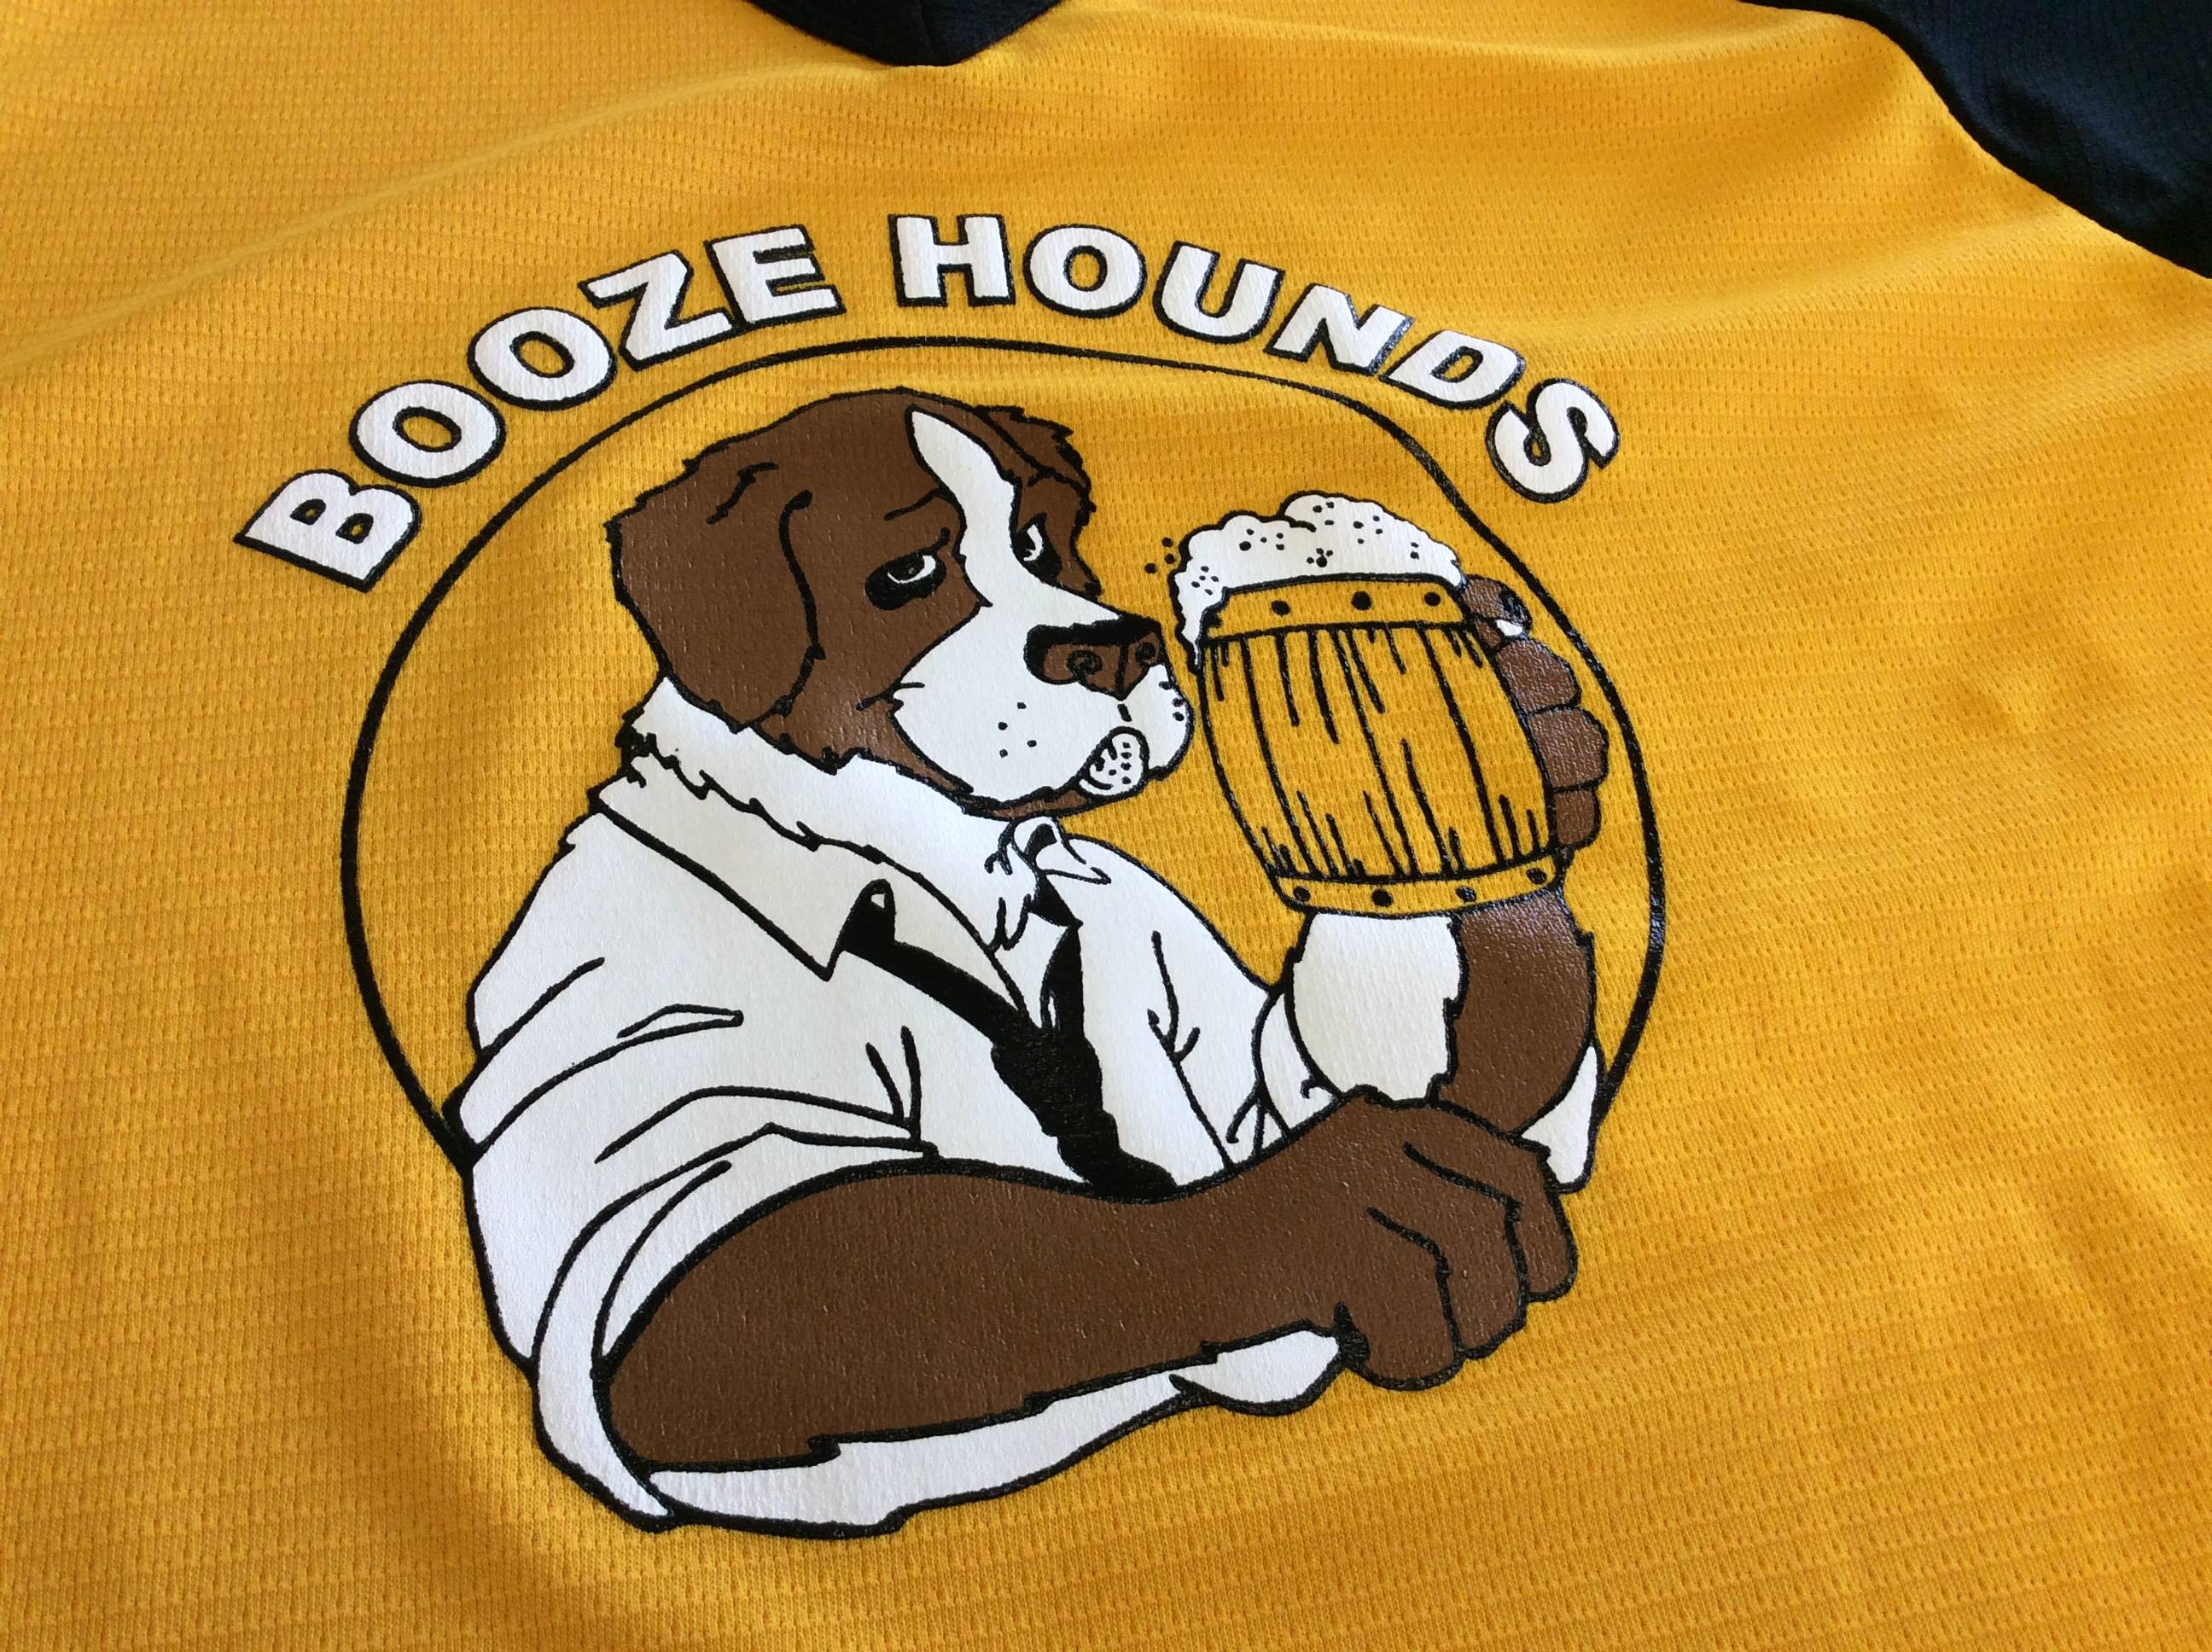 Best Baseball Team Names Booze Hounds